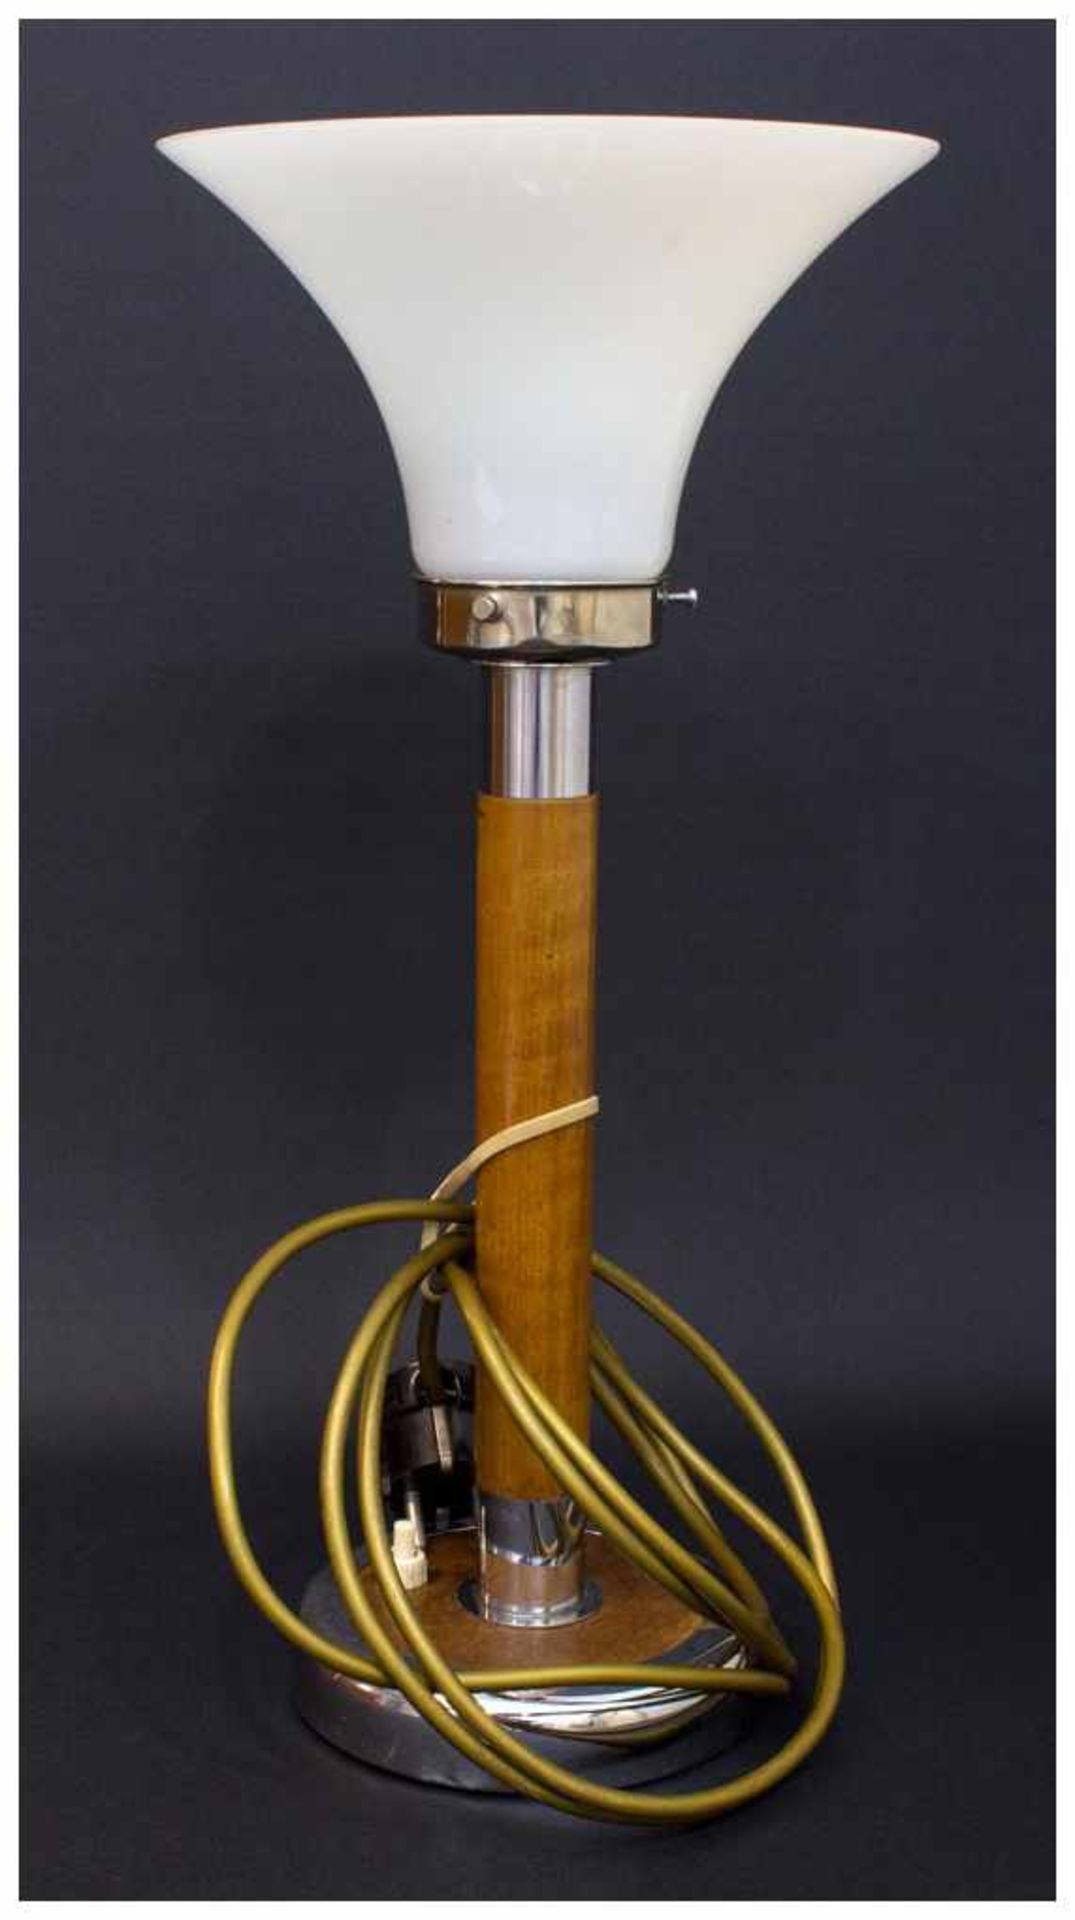 Tischlampe Mitte 20. Jh., Holzfuss u. Schaft mit verchromter Montierung, Milchglasschirm, H. 42 cm - Bild 2 aus 2